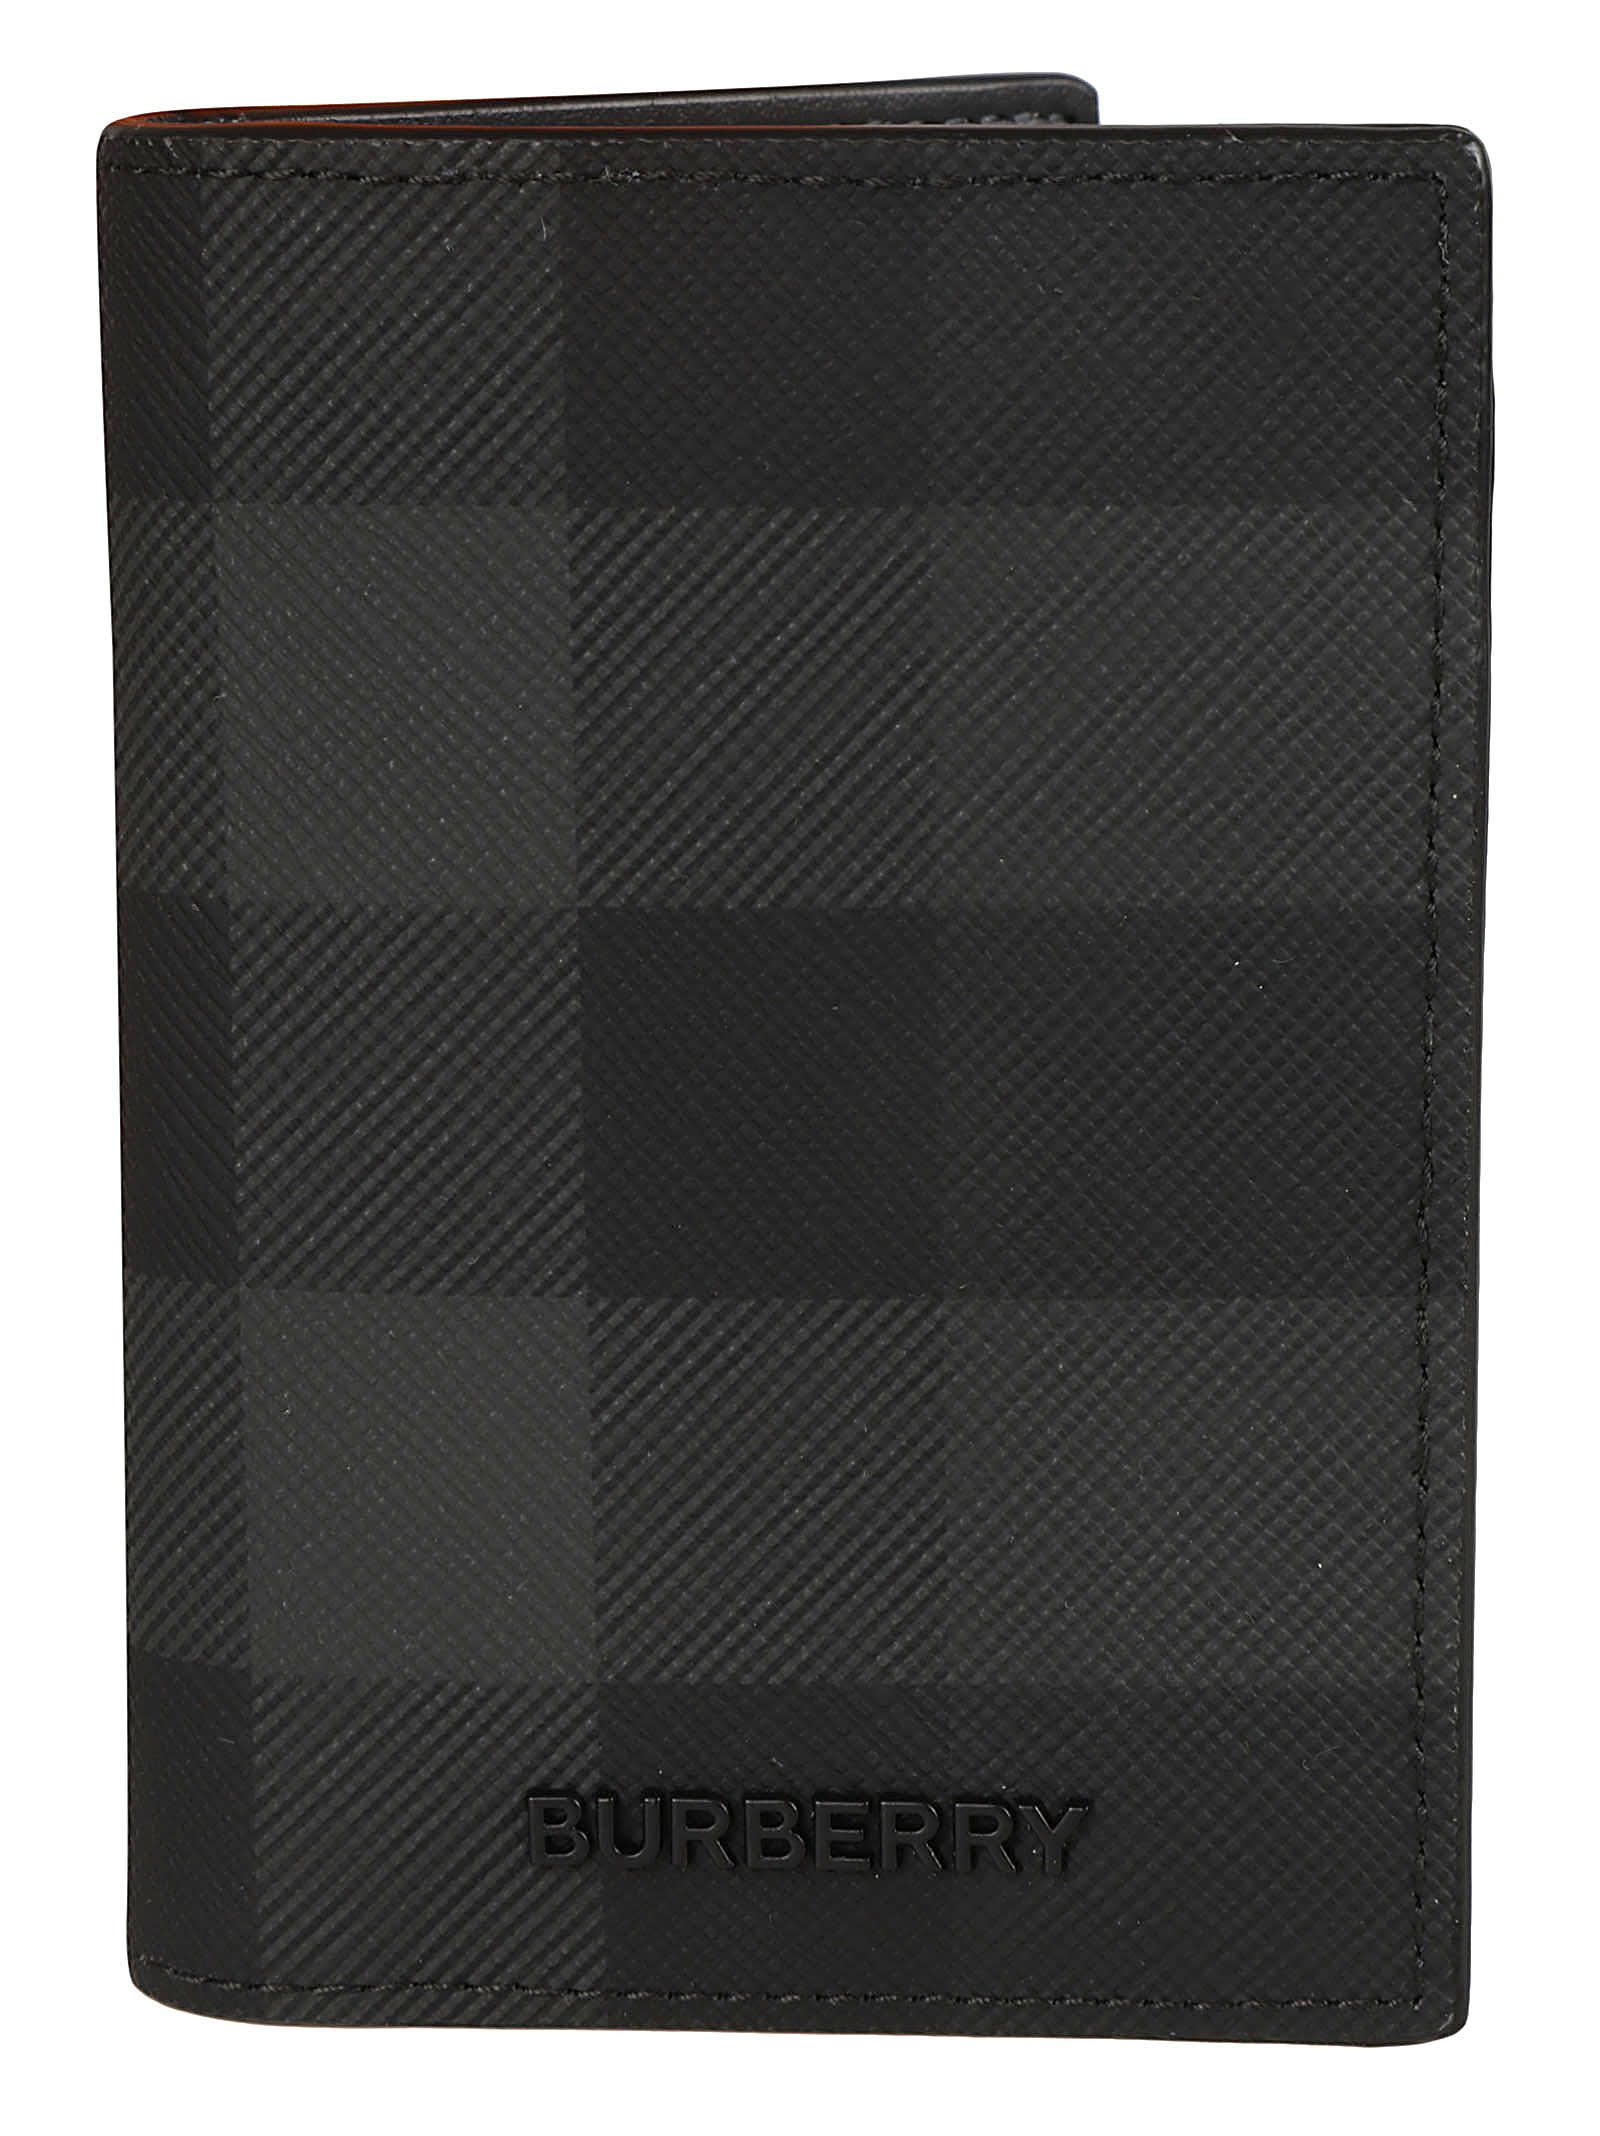 Burberry Bateman Wallet